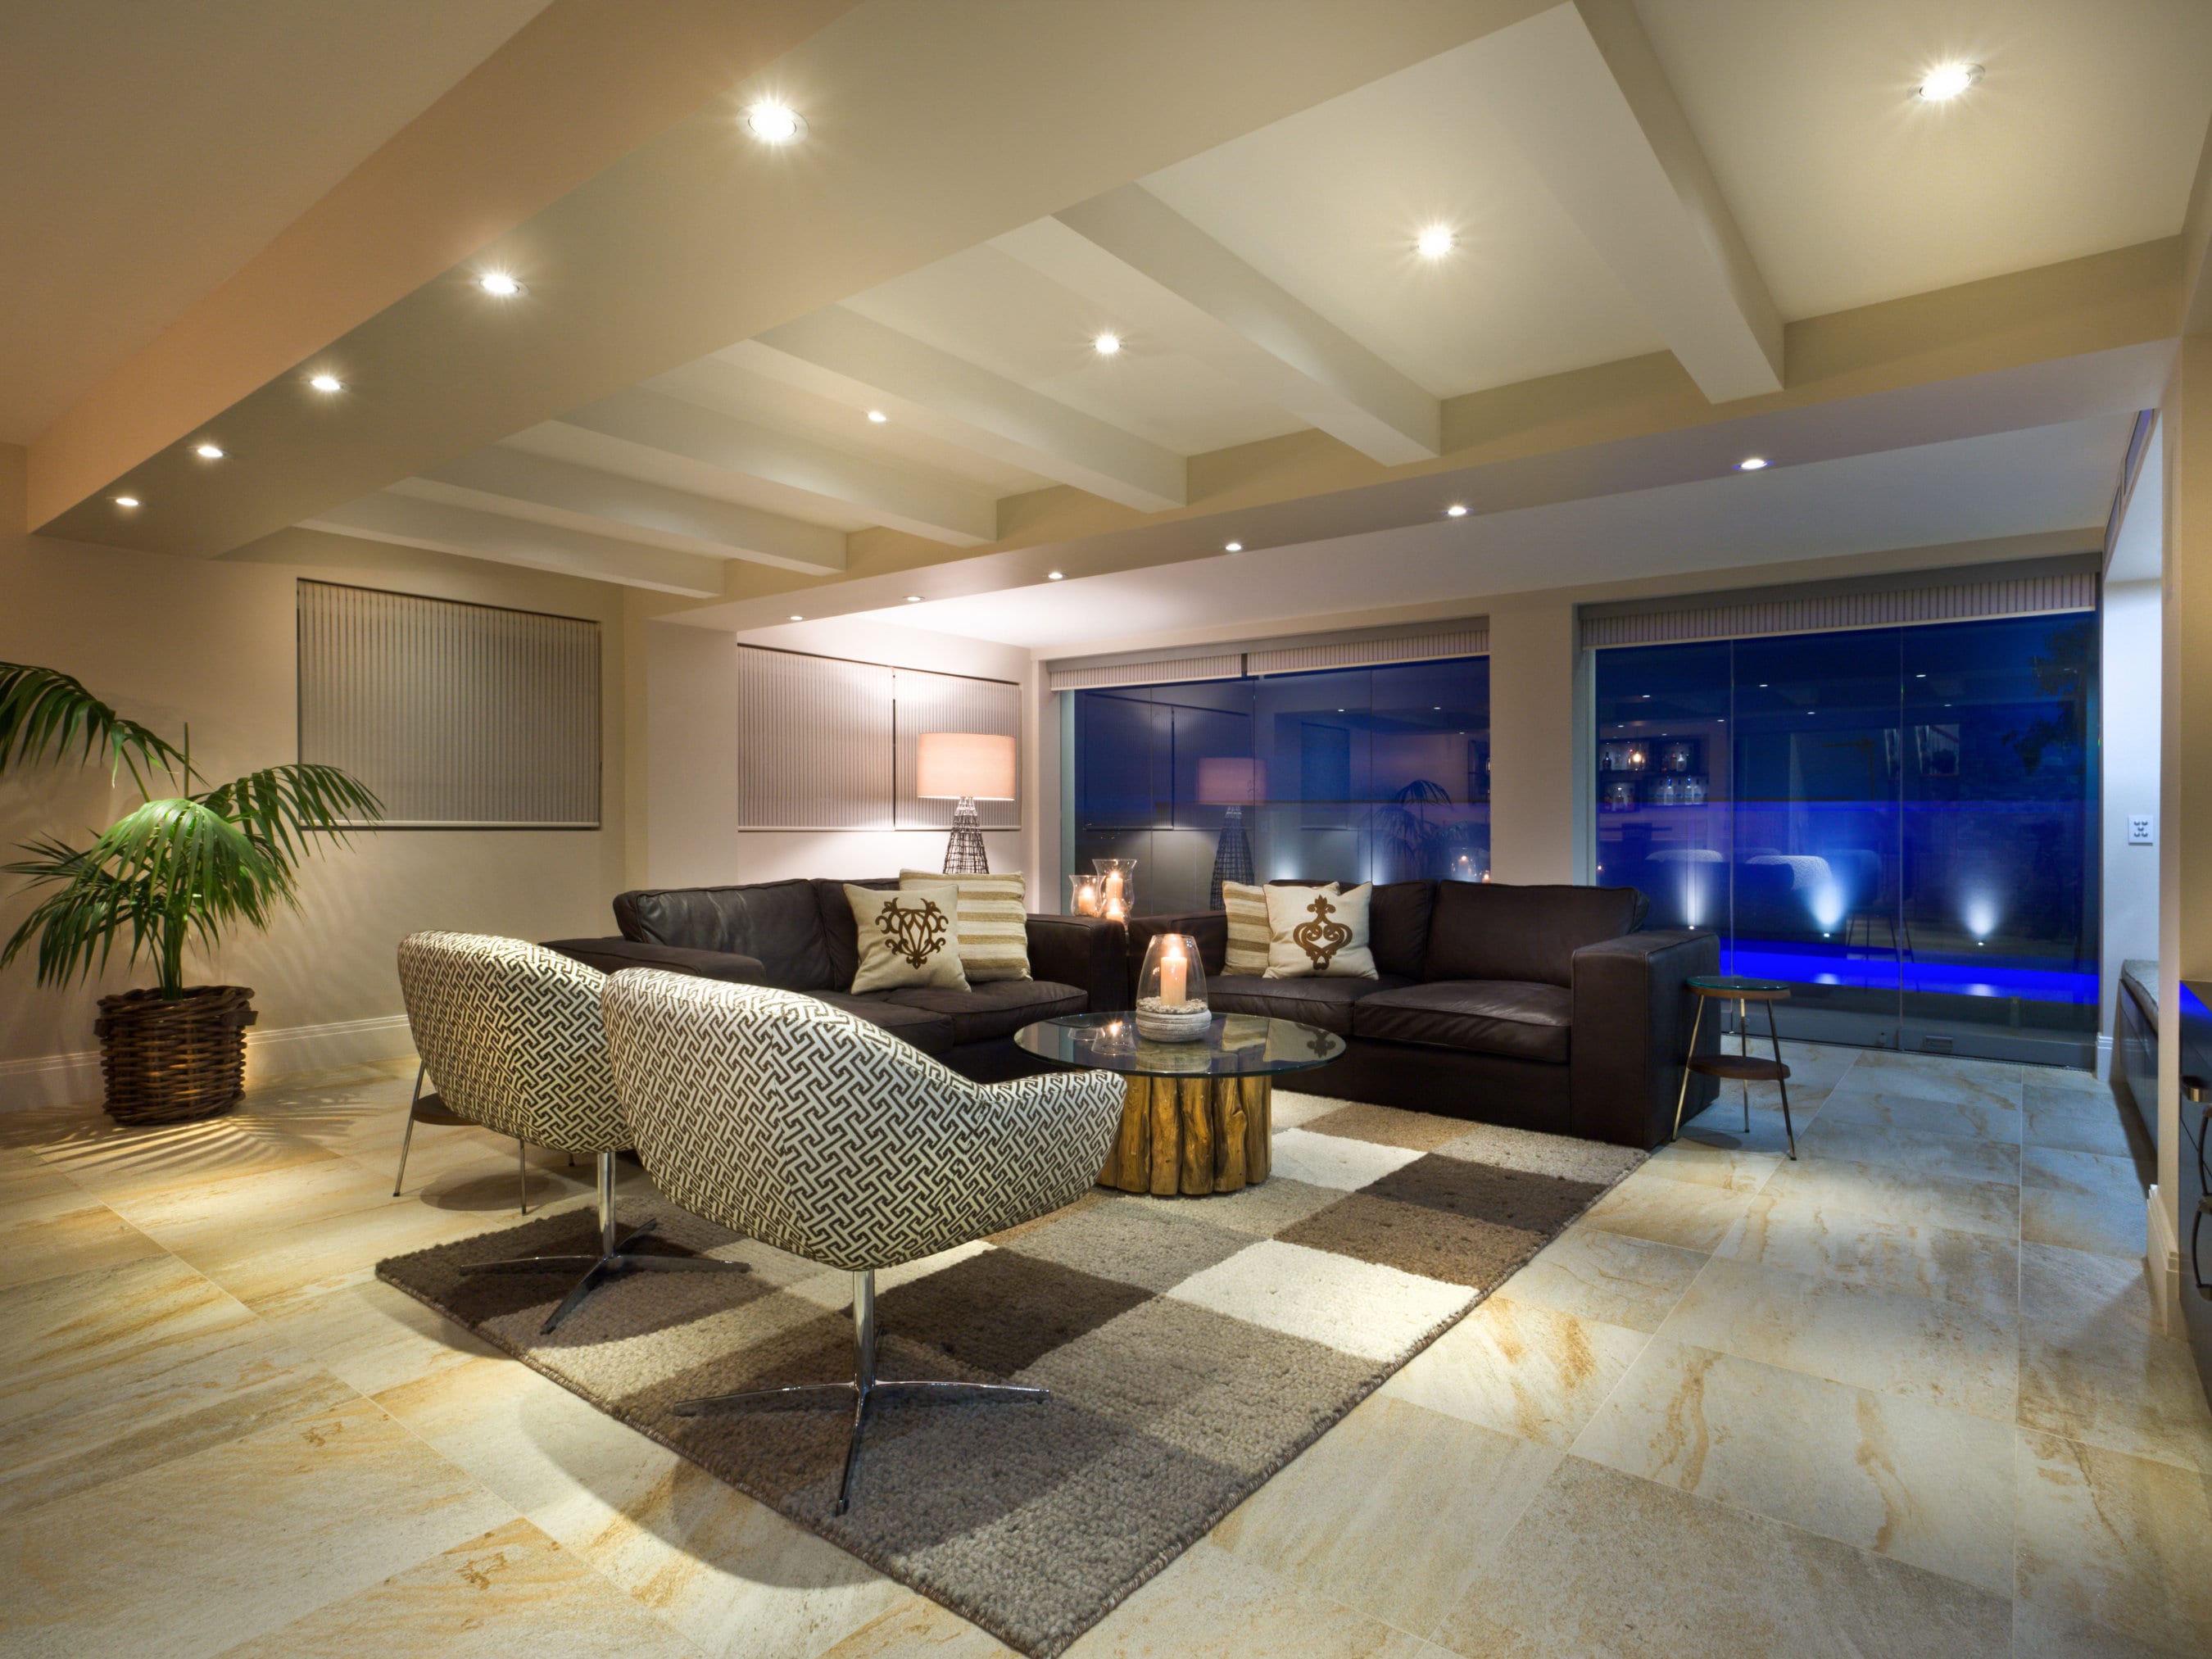 Phòng khách sang trọng là nơi lý tưởng cho bạn thư giãn và giải trí. Với những thiết kế độc đáo và hiện đại, mỗi phòng khách là một tác phẩm nghệ thuật. Hãy chiêm ngưỡng những hình ảnh về phòng khách sang trọng và lịch sự này để nâng tầm không gian sống của bạn! 